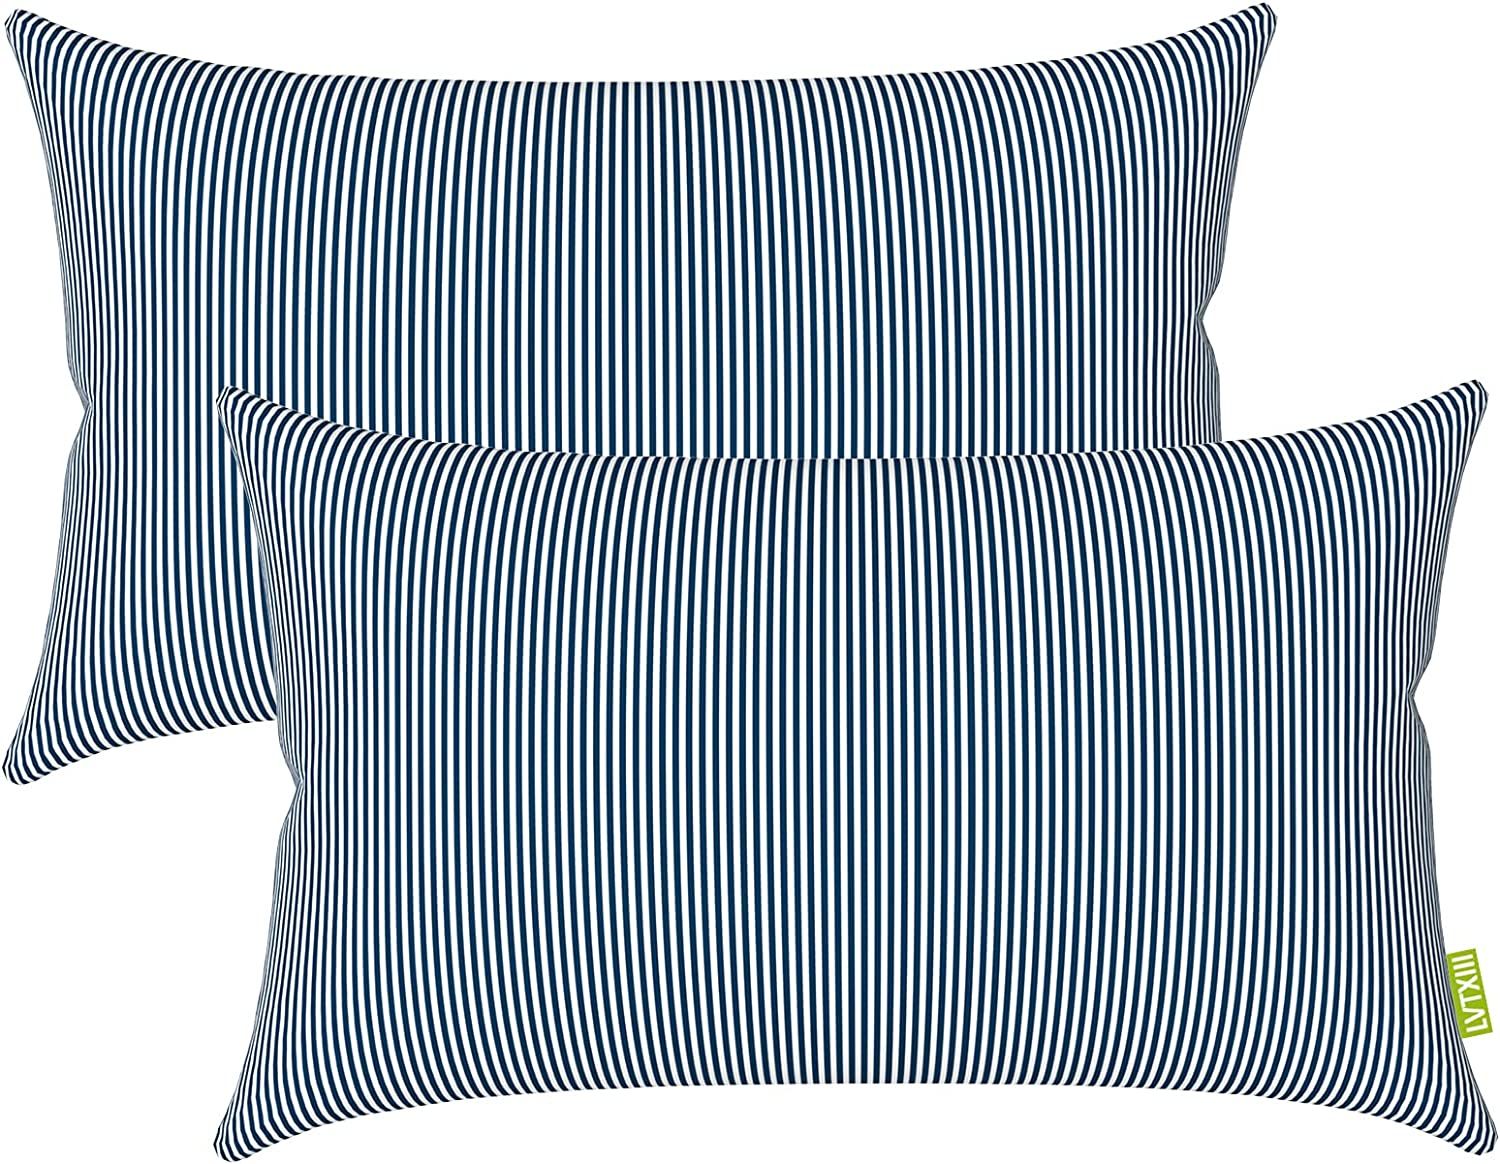 LVTXIII Outdoor/Indoor Lumbar Pillow Covers ONLY, 12” x 20” Fade-Resistant Patio Lumbar Cushi... | Amazon (US)